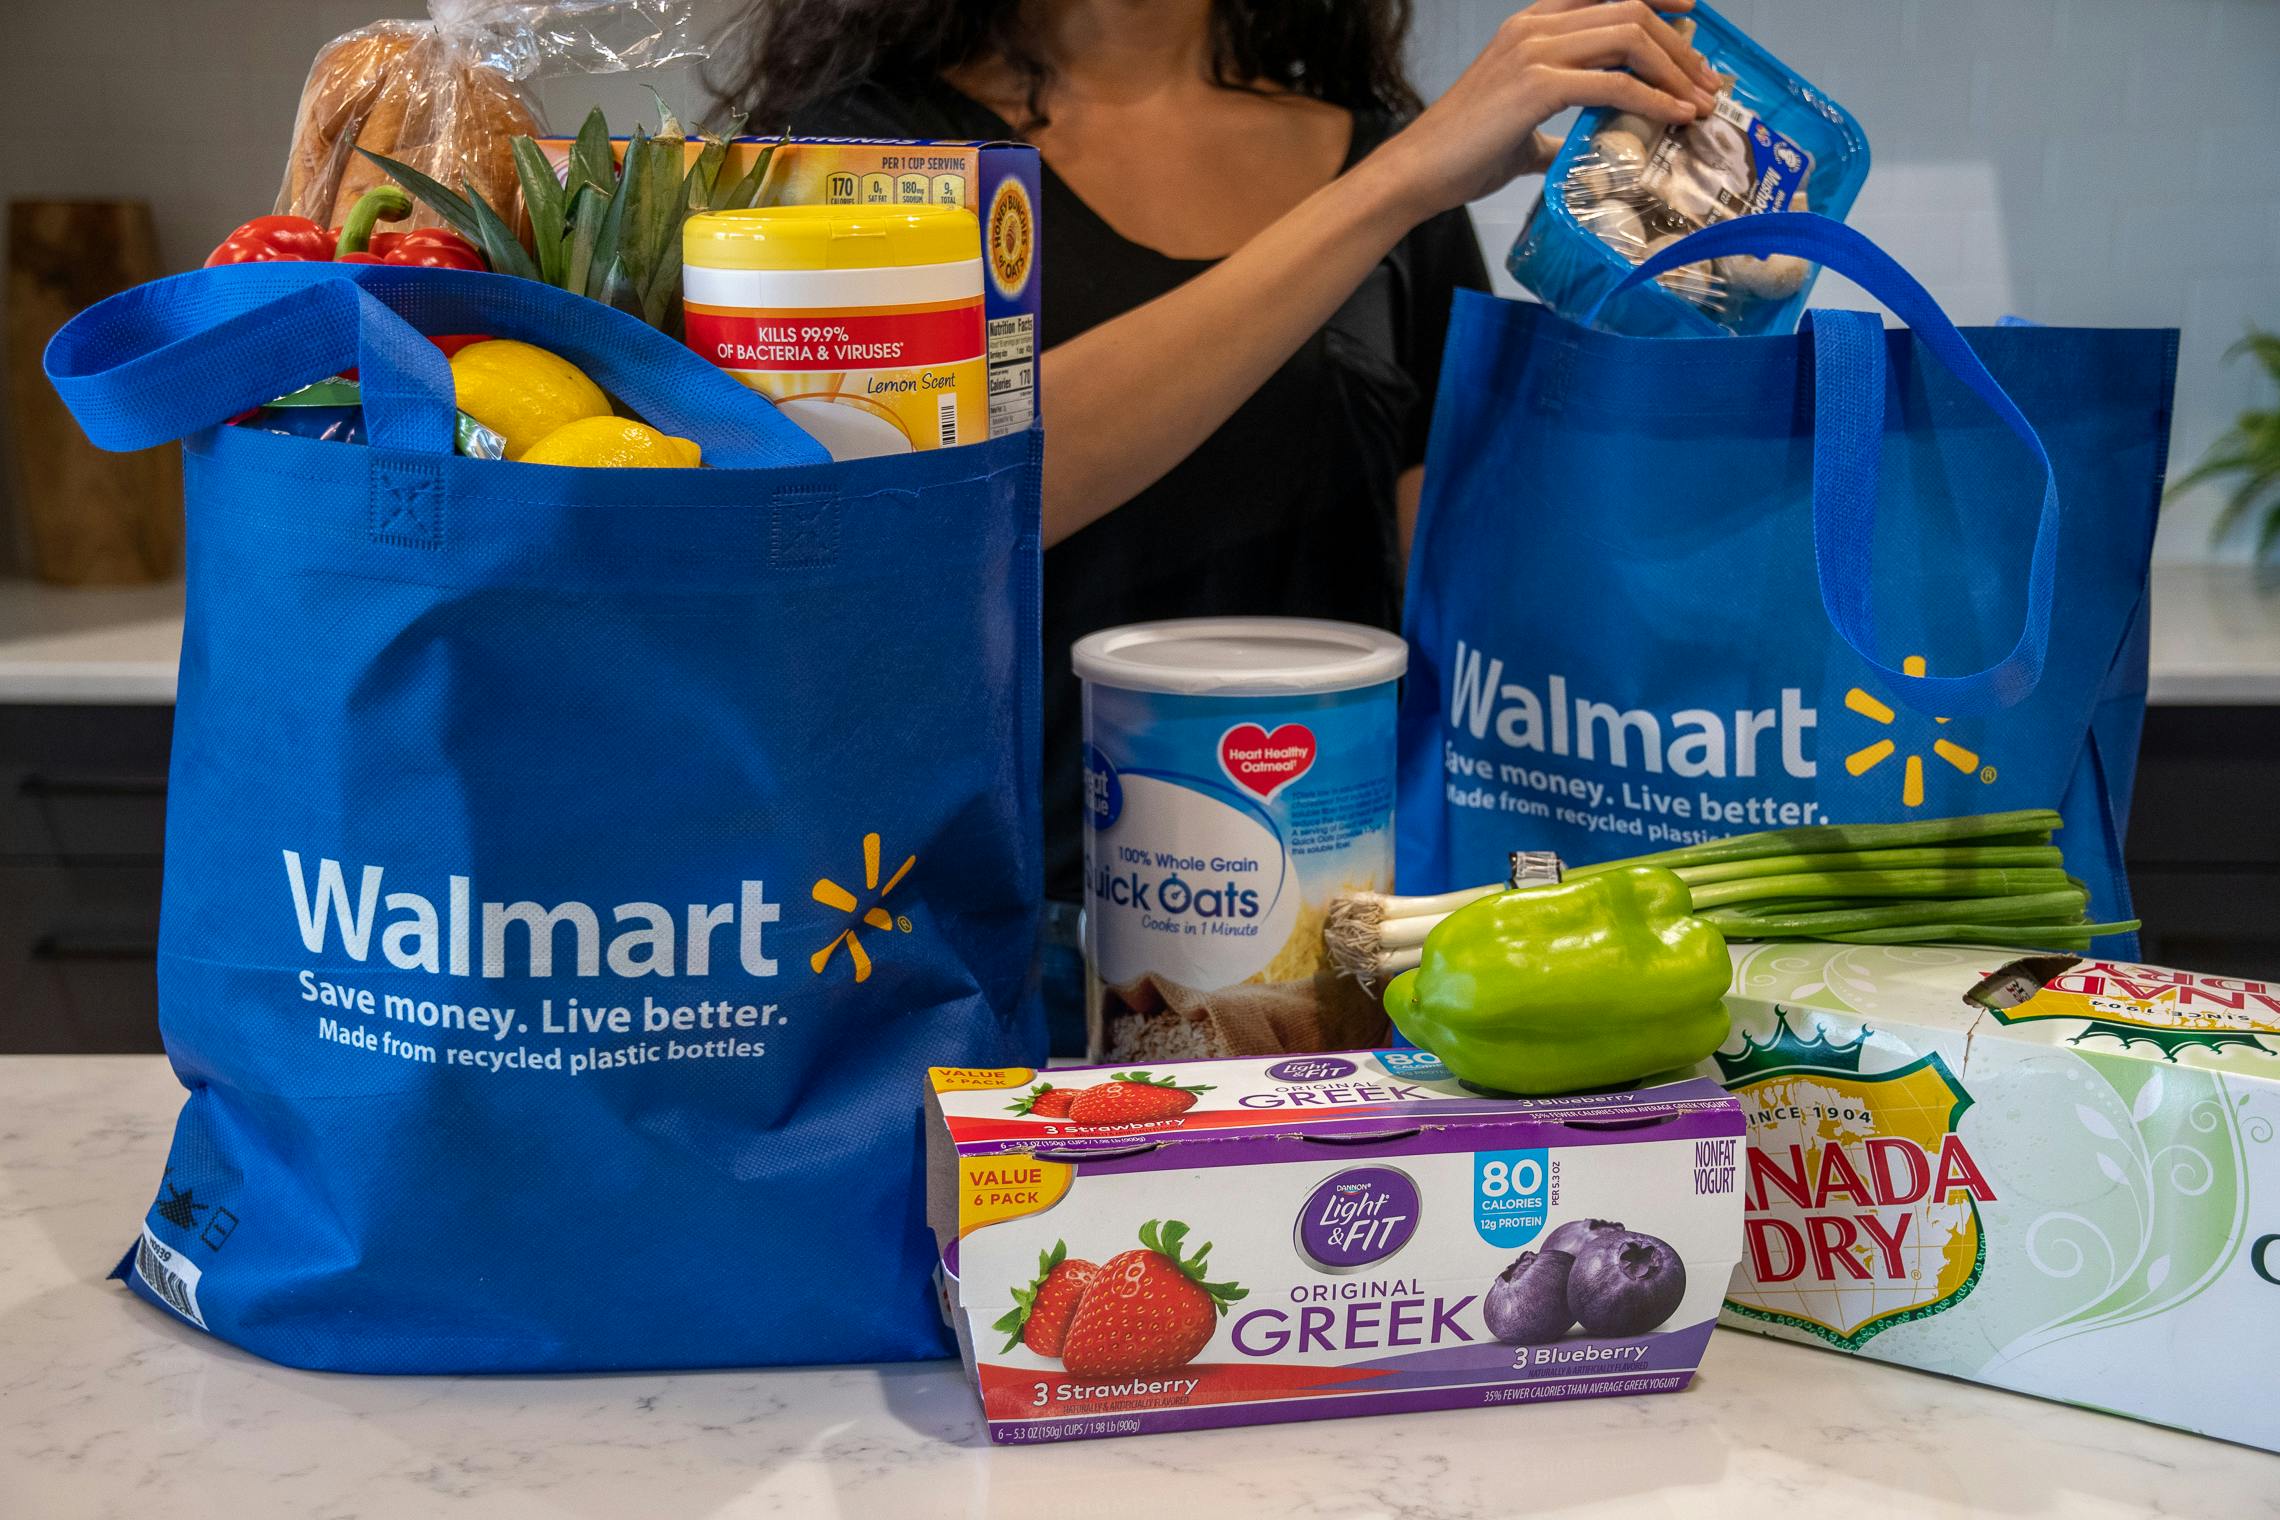 Saugus Walmart unveils online-grocery pickup - Itemlive